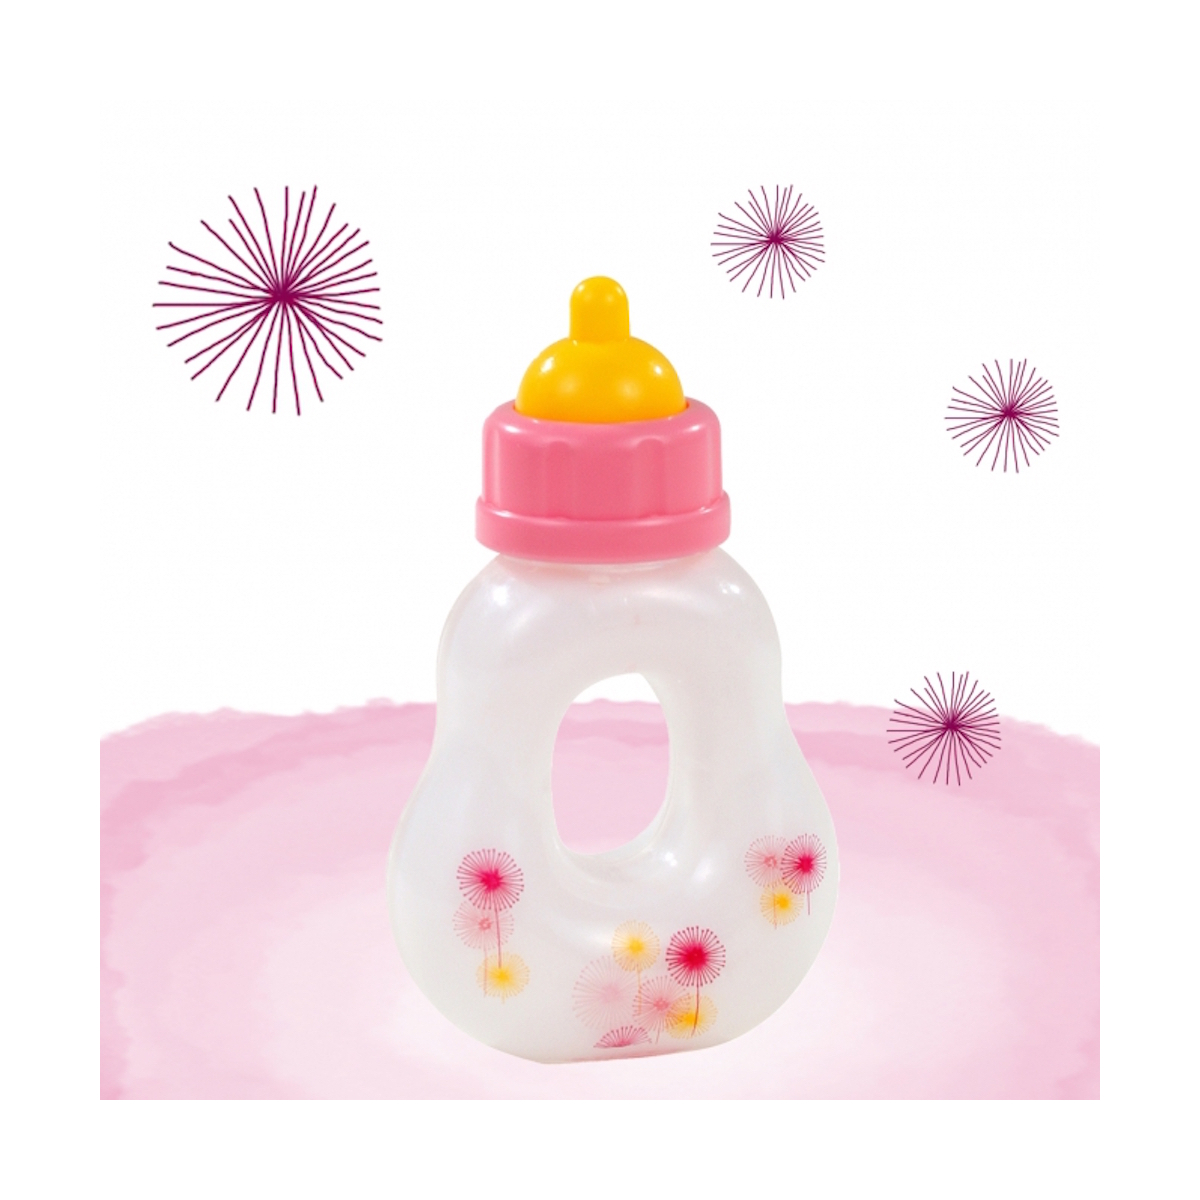 Magic virágos üveg minden babához